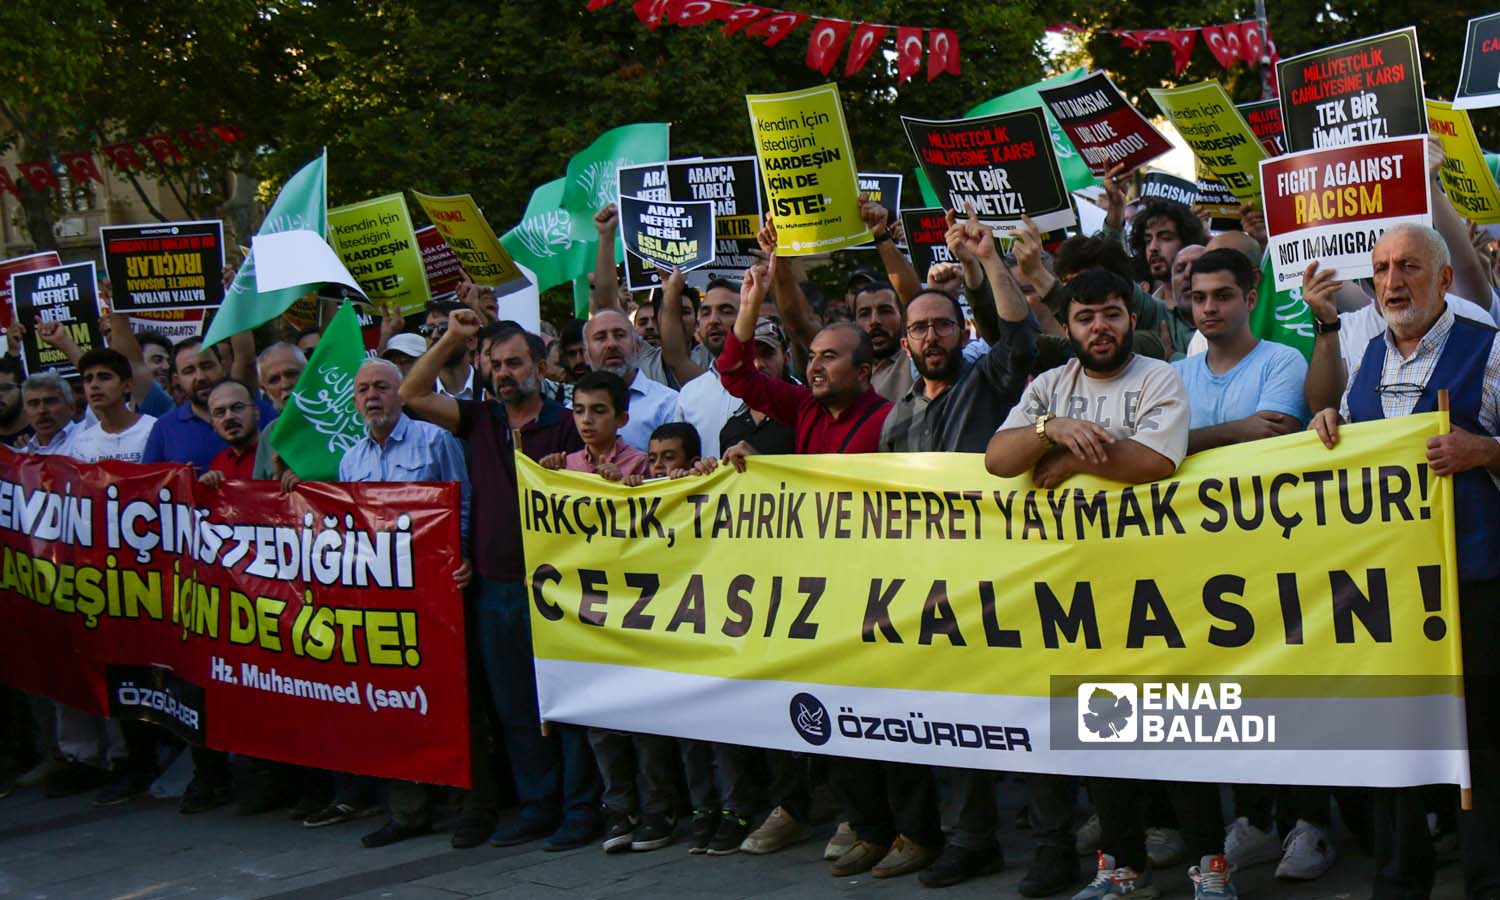 ناشطون يرفعون لوحات تندد بالعنصرية، وكتب عاللوحة الصفراء عبارة"من يحرض على العنصرية وينشر الكراهية فهو مجرم، ولا ينبغي أن يبقى دون عقاب"- اسطنبول 16 من أيلول 2023 (- يوسف حمّص)